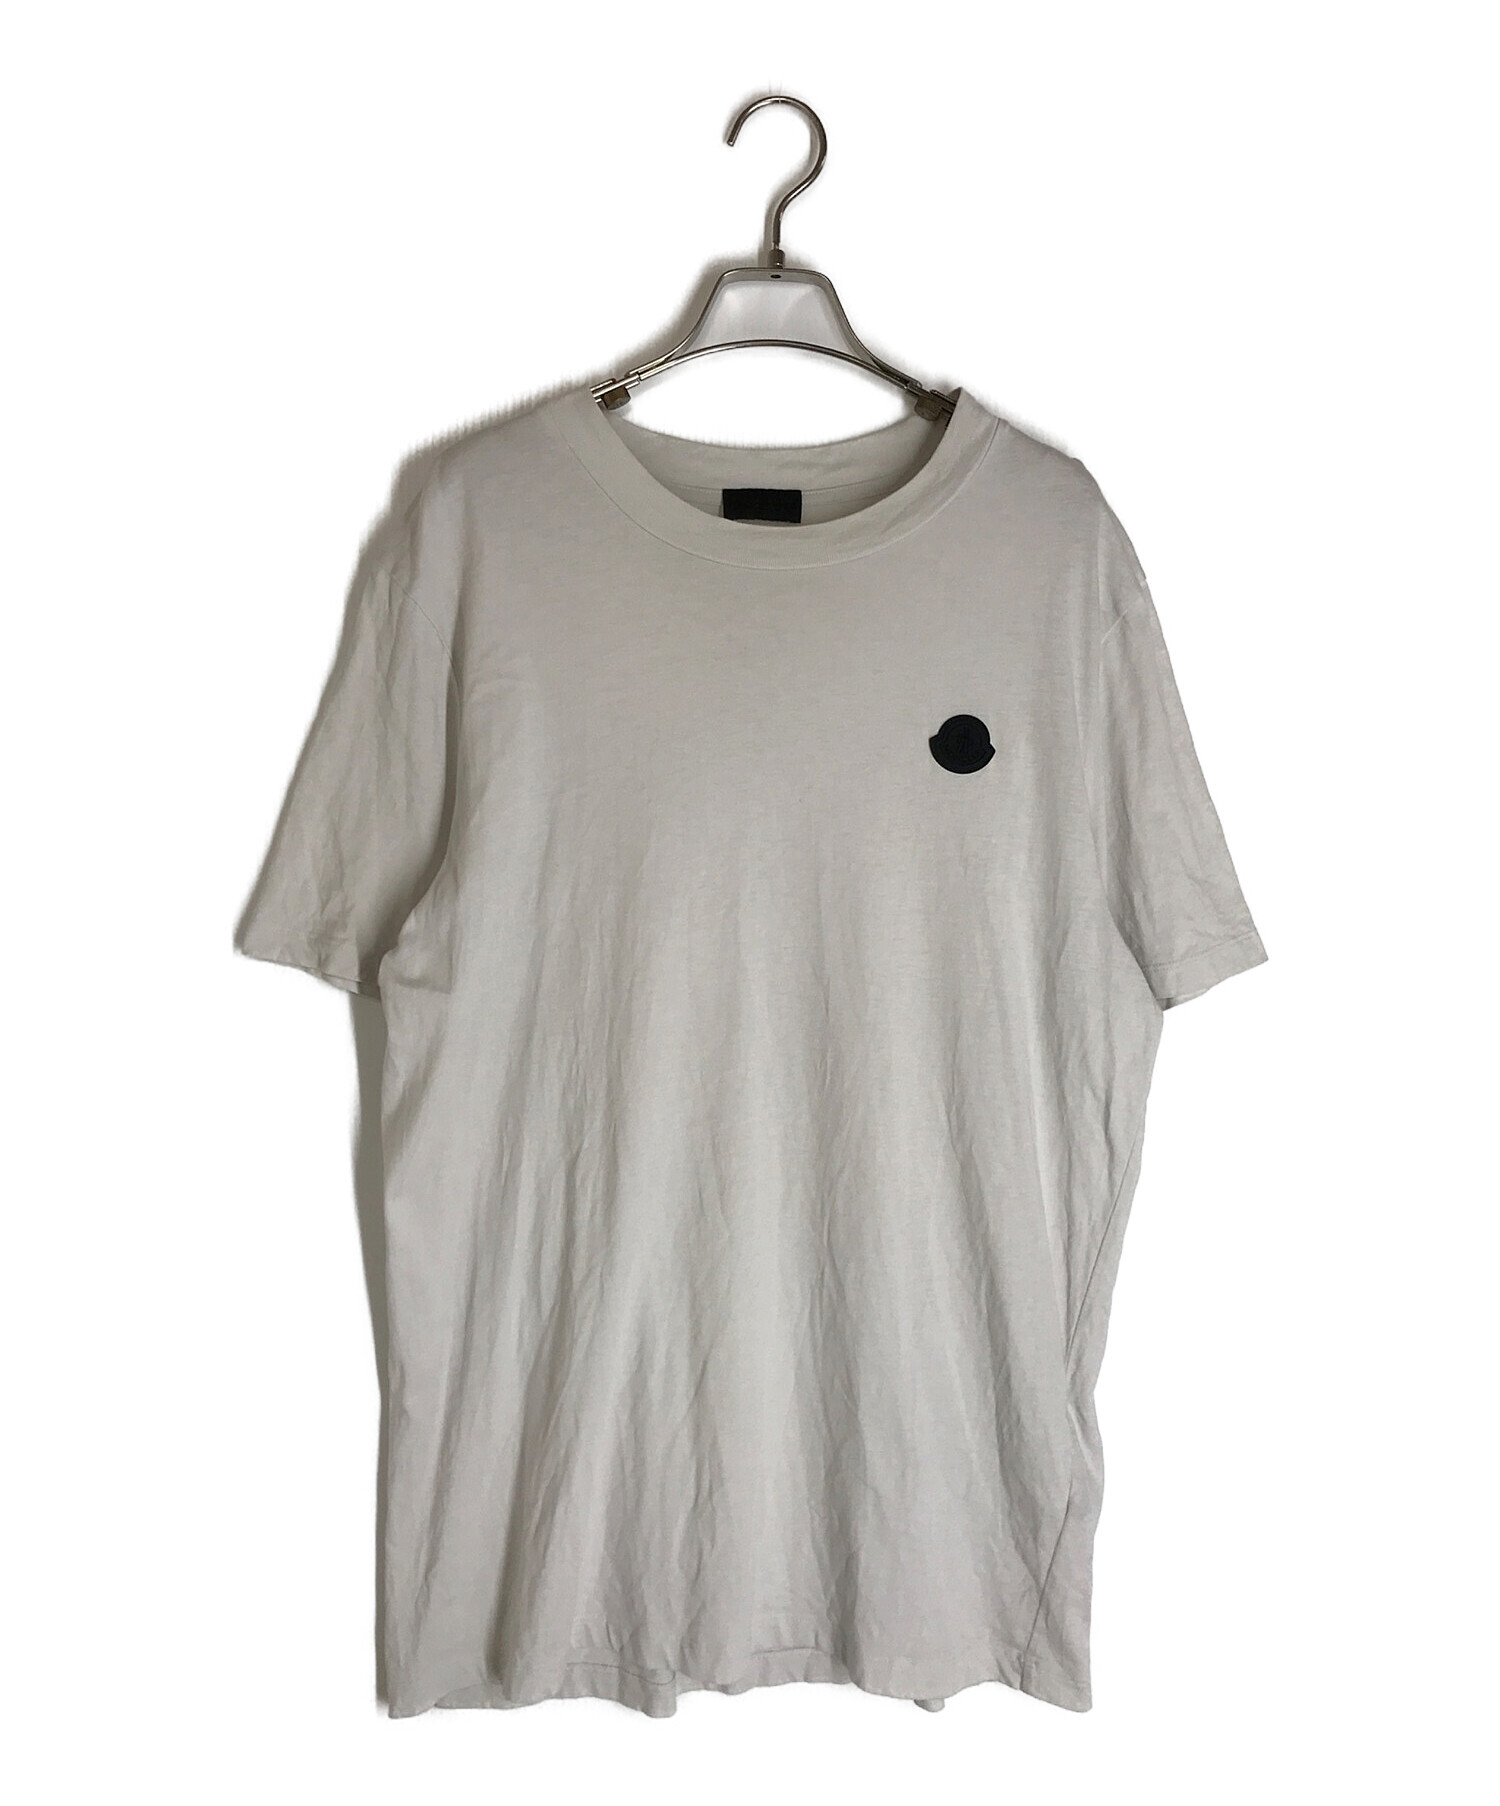 MONCLER (モンクレール) ワンポイントクルーネックTシャツ ライトグレー サイズ:S